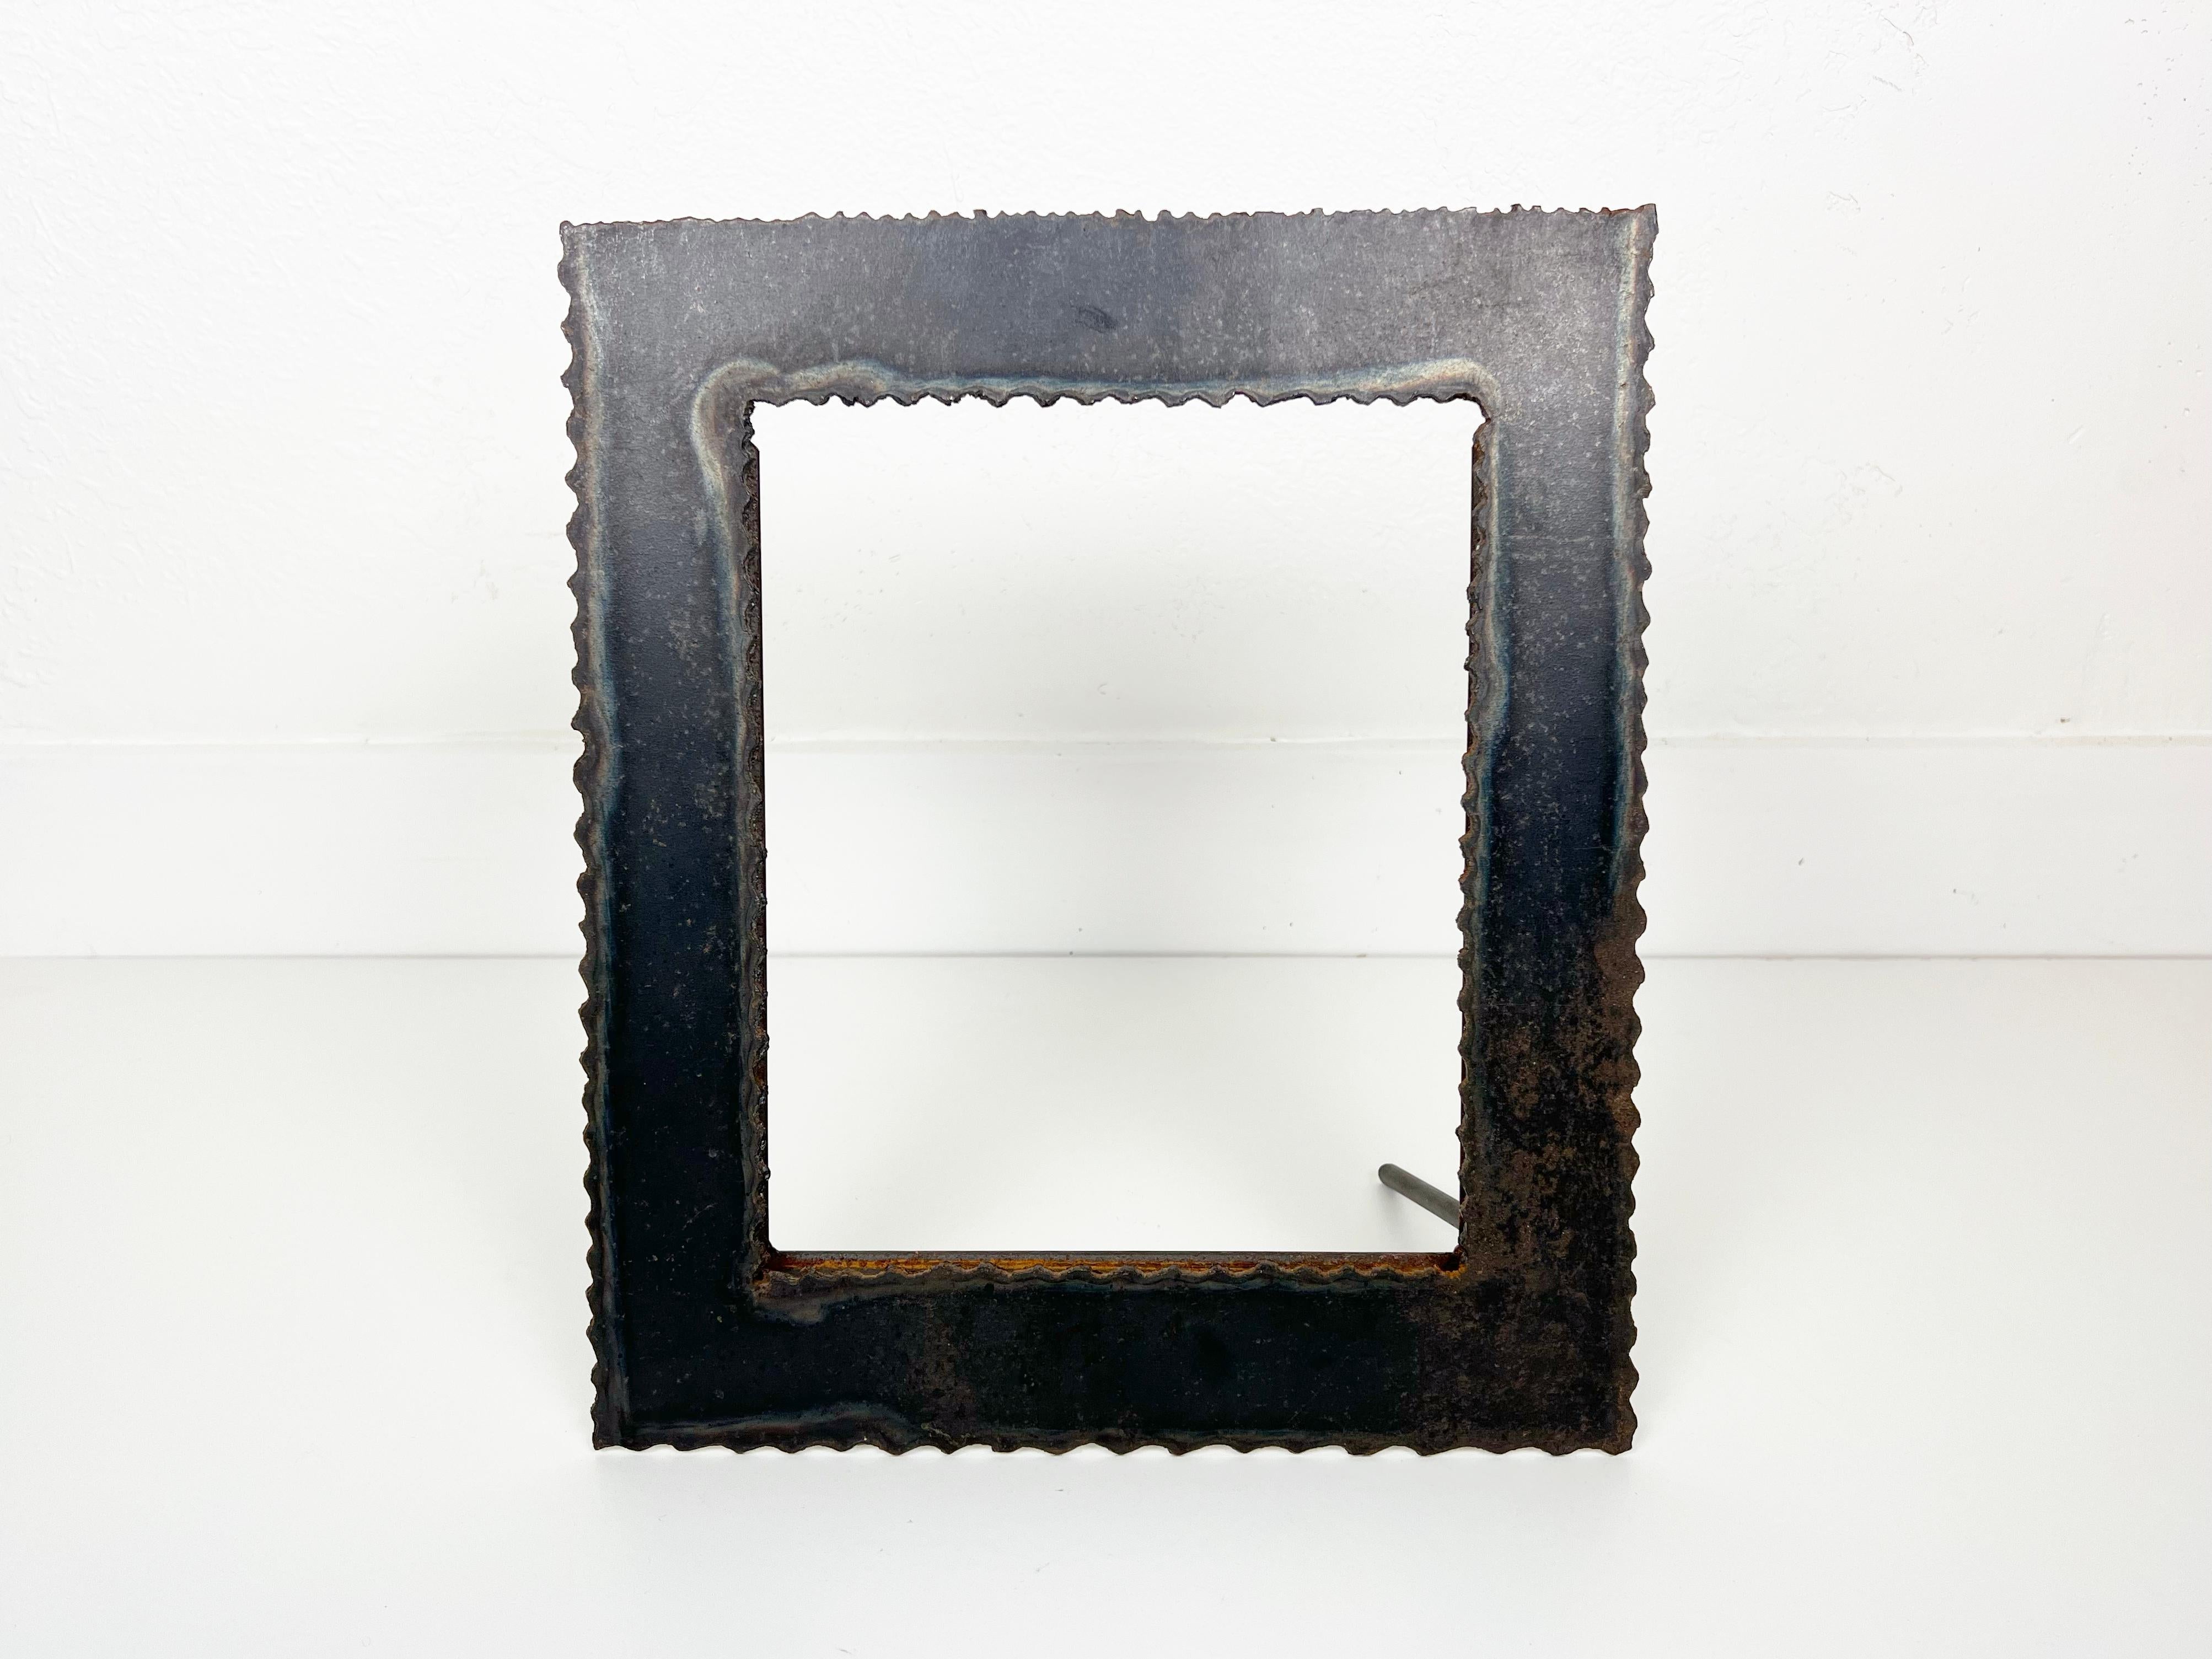 Tableau en métal brutaliste vintage fait à la main, découpé au chalumeau, fabriqué à partir d'acier de forte épaisseur. Le cadre est doté d'un support métallique qui permet de le poser sur une table à la verticale ou à l'horizontale. 

Année :